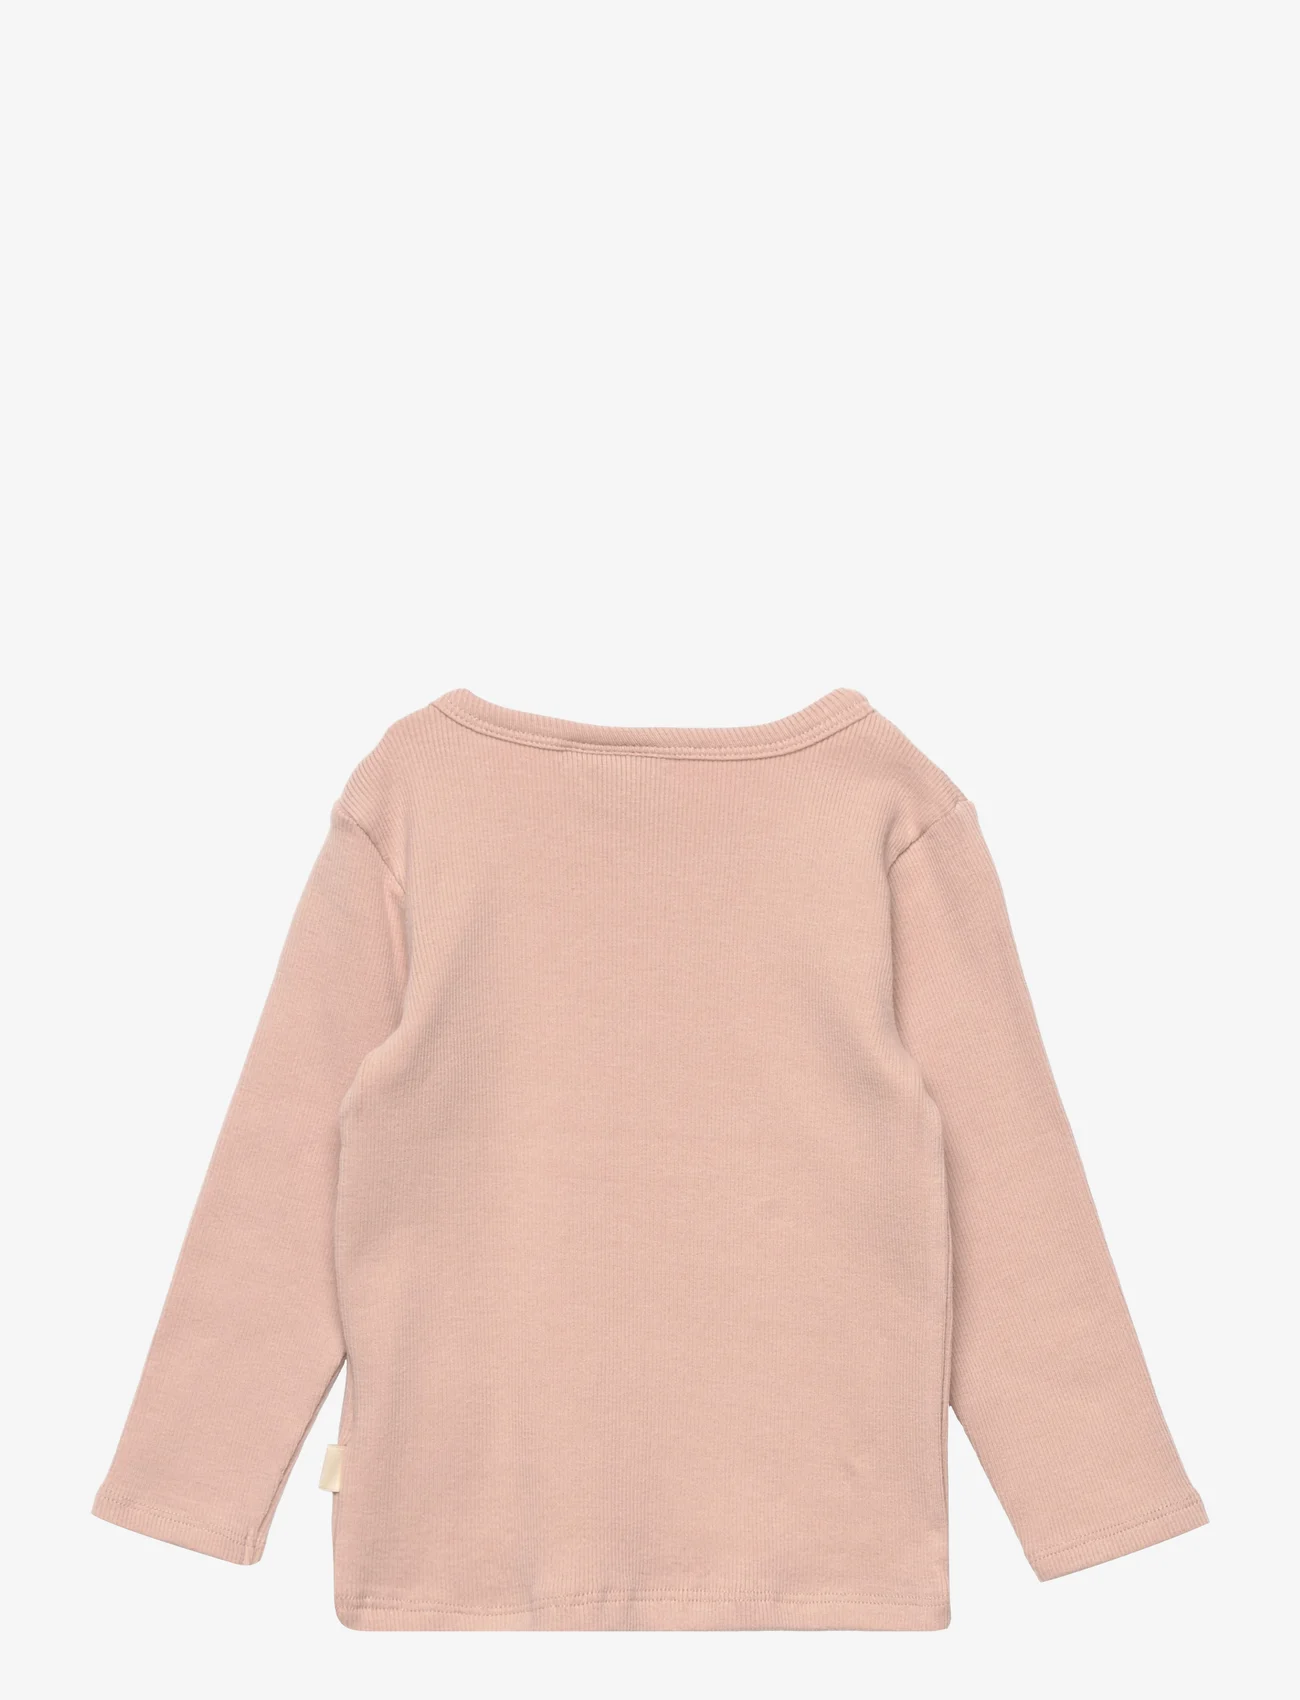 Sofie Schnoor Baby and Kids - T-shirt long-sleeve - marškinėliai ilgomis rankovėmis - light rose - 1